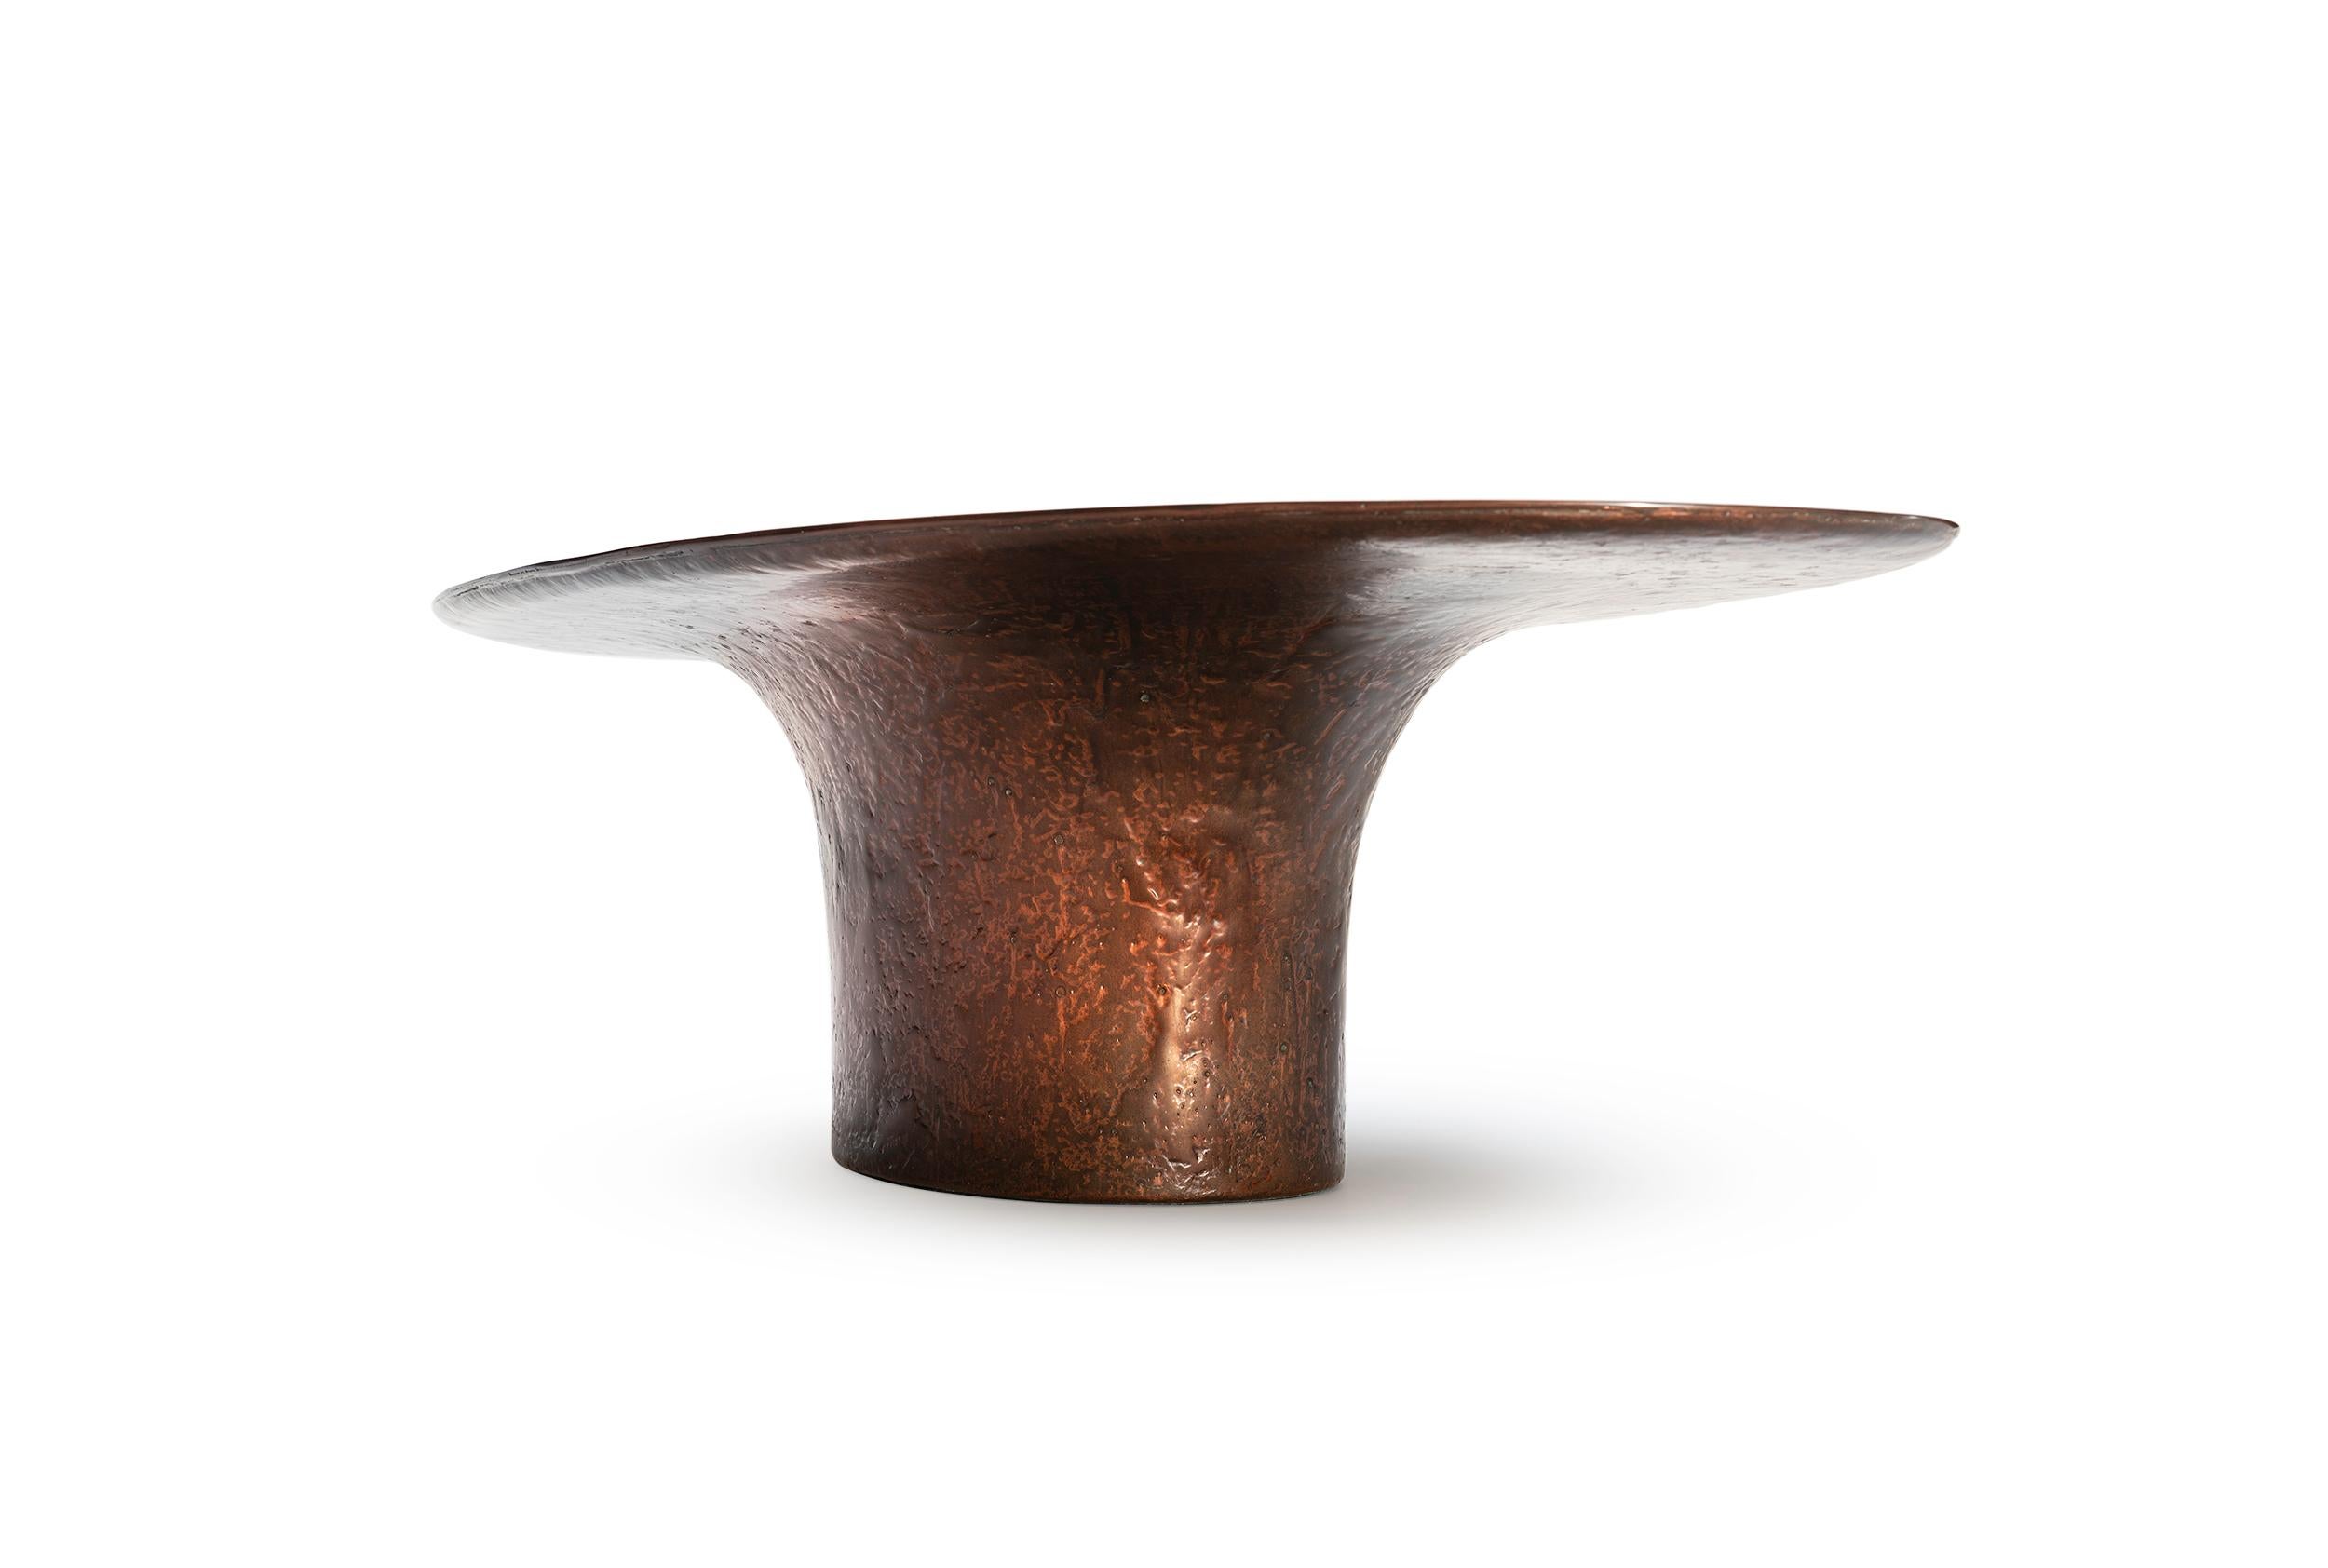 NR Copper V1 -21. Jahrhundert Zeitgenössische skulpturale Flüssigkeit Kupfer Oval Couchtisch

Die aus gegossenem, flüssigem Kupfer hergestellte NR-Kupferversion könnte leicht mit einer Skulptur und einem Kunstobjekt in Verbindung gebracht werden.